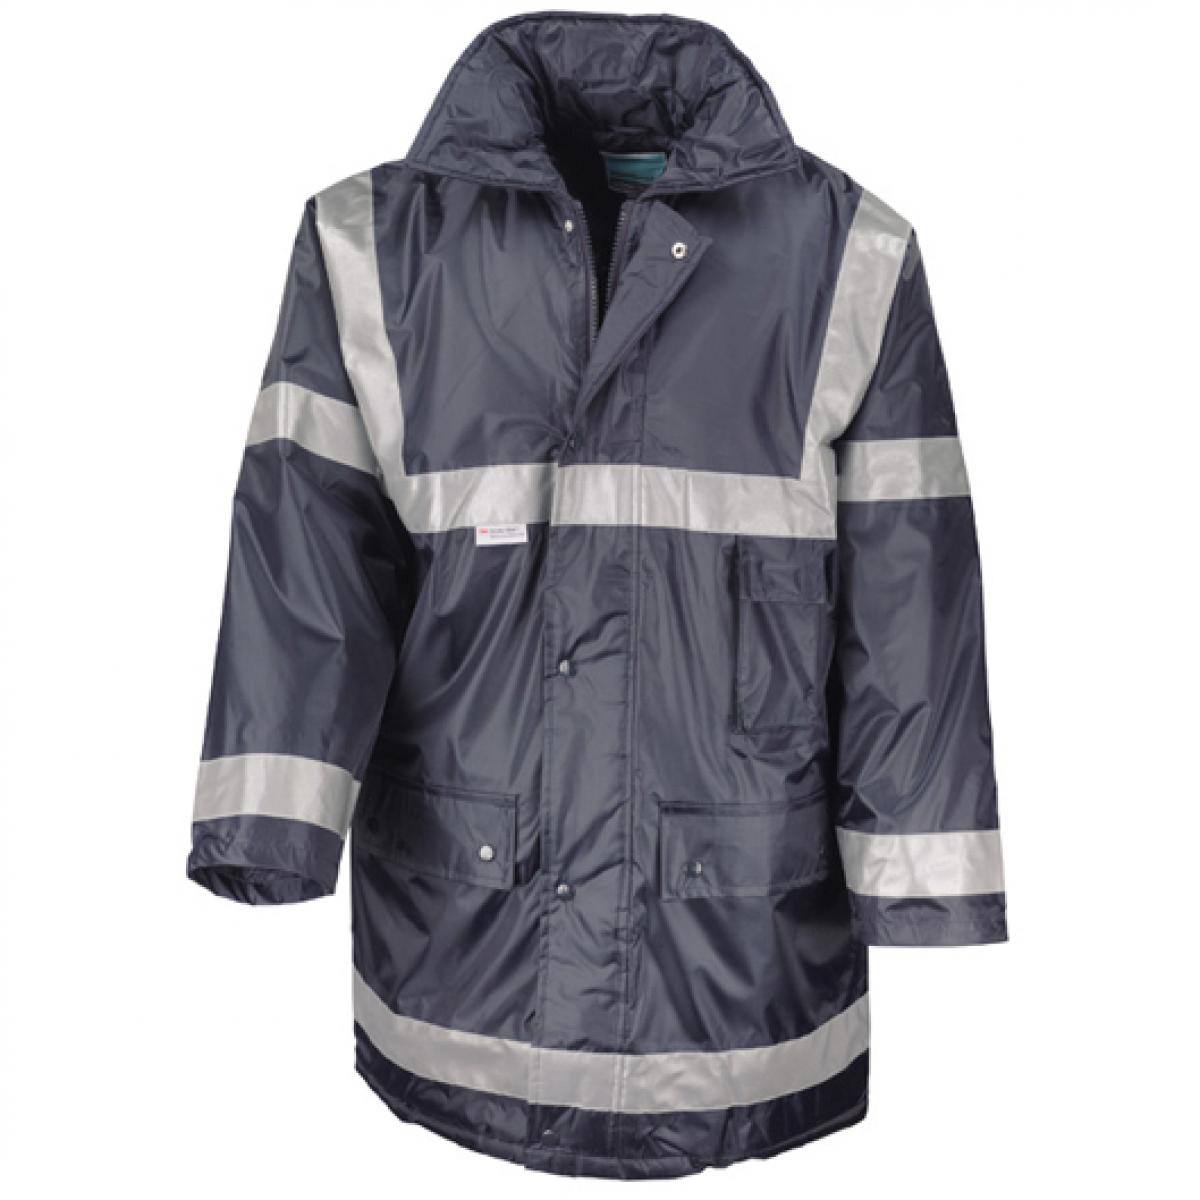 Hersteller: Result WORK-GUARD Herstellernummer: R023X Artikelbezeichnung: Herren Management Coat Arbeitsjacke Farbe: Navy